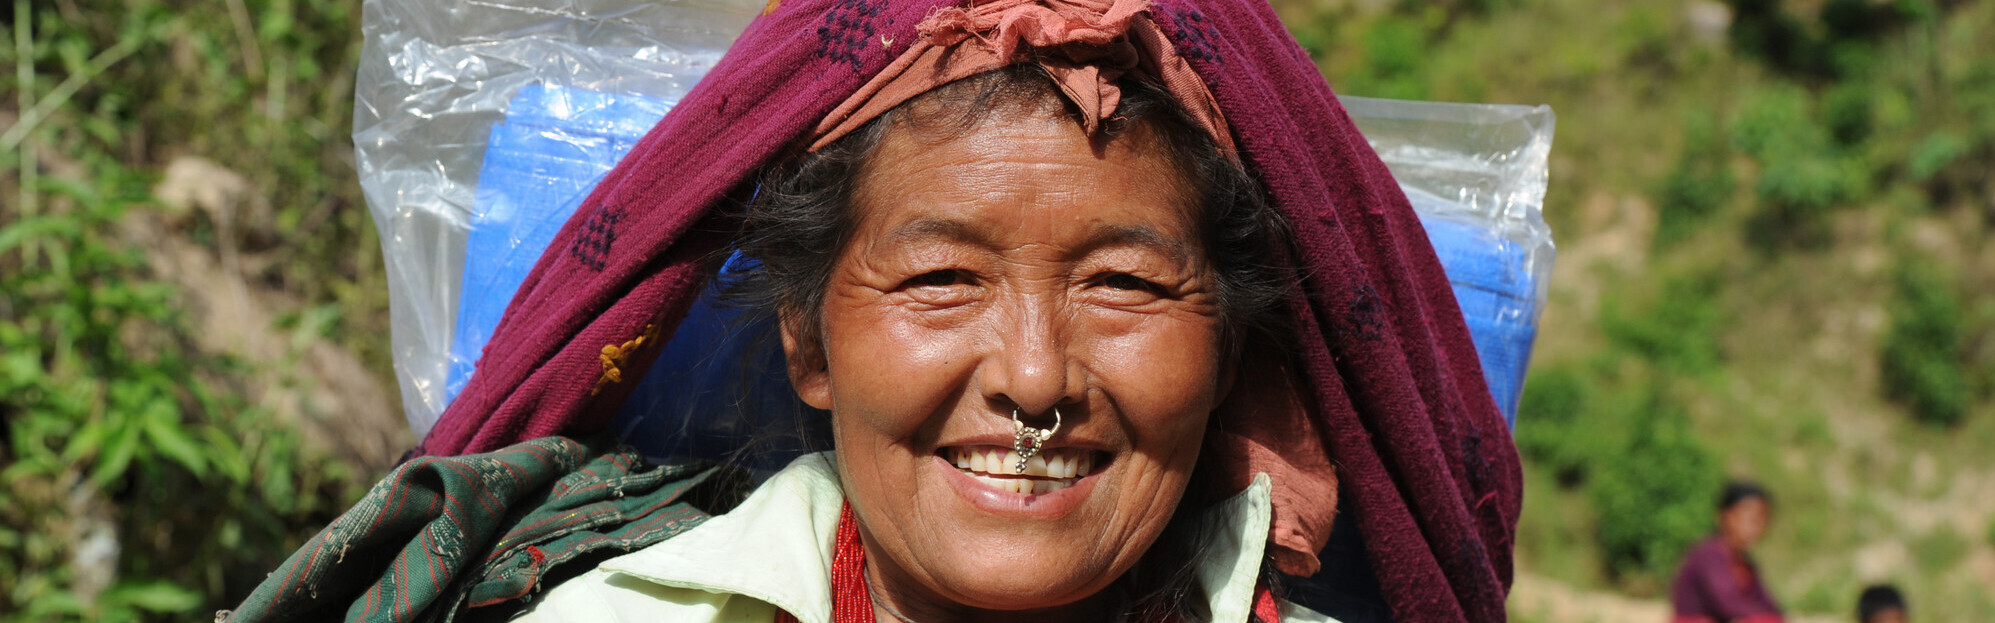 Eine Frau in Nepal hat Hilfsgüter erhalten